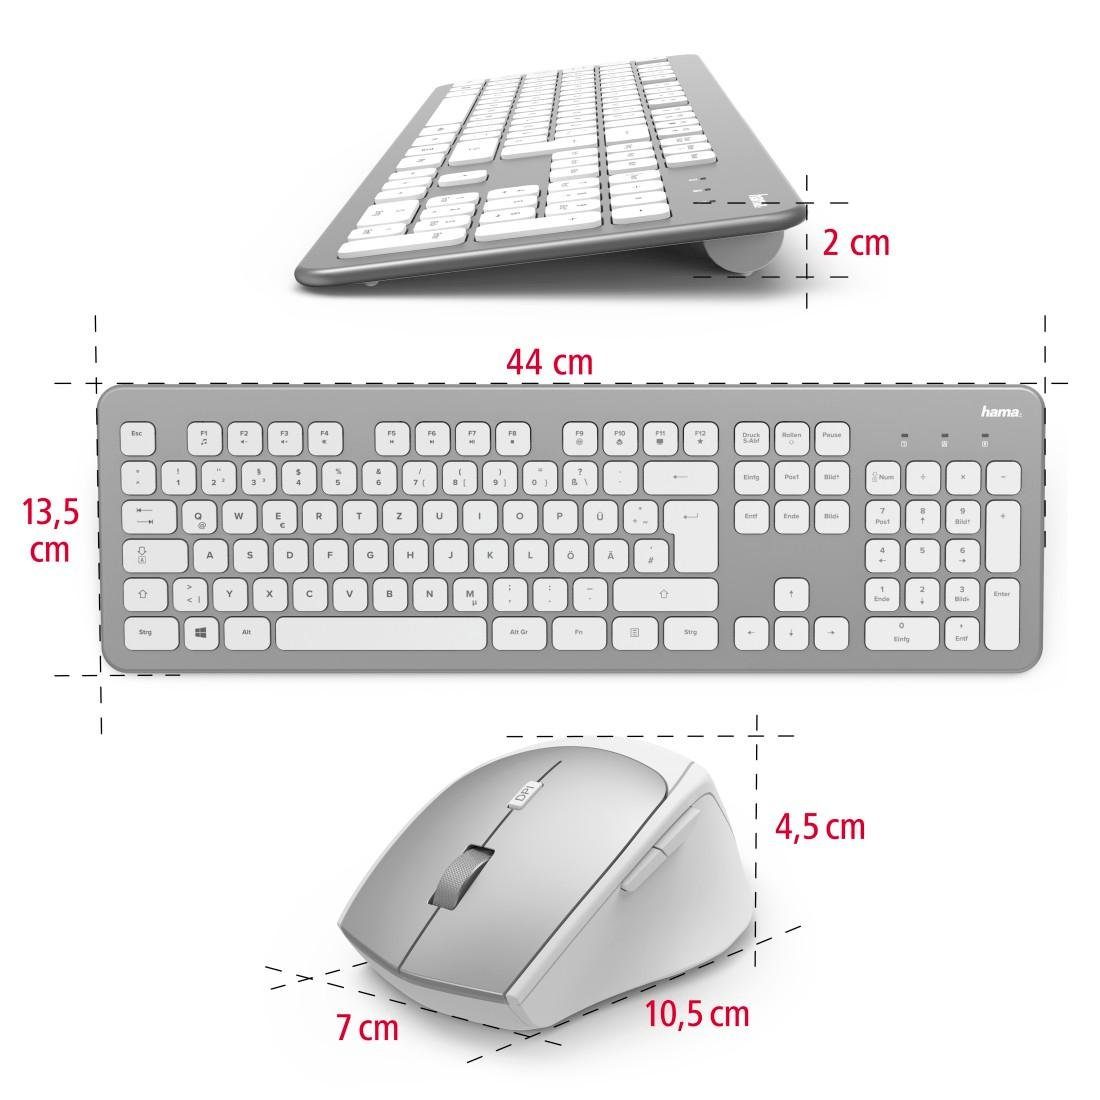 weiß Tastatur- "KMW-700" und Funktastatur-/Maus-Set Maus-Set Tastatur/Maus-Set Hama